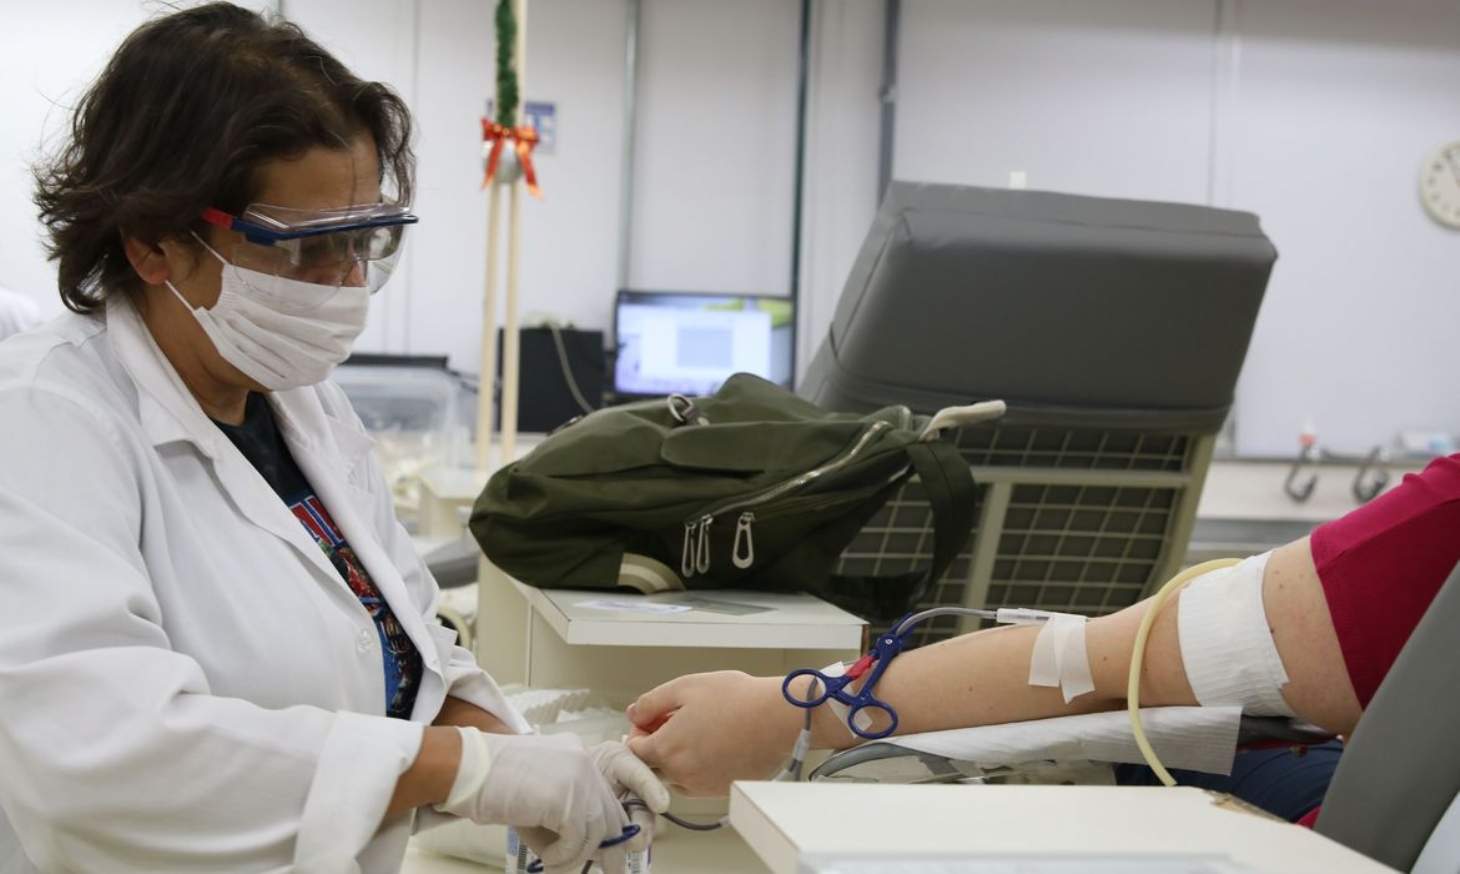 Doação de sangue diminui na pandemia | Jornal da Orla